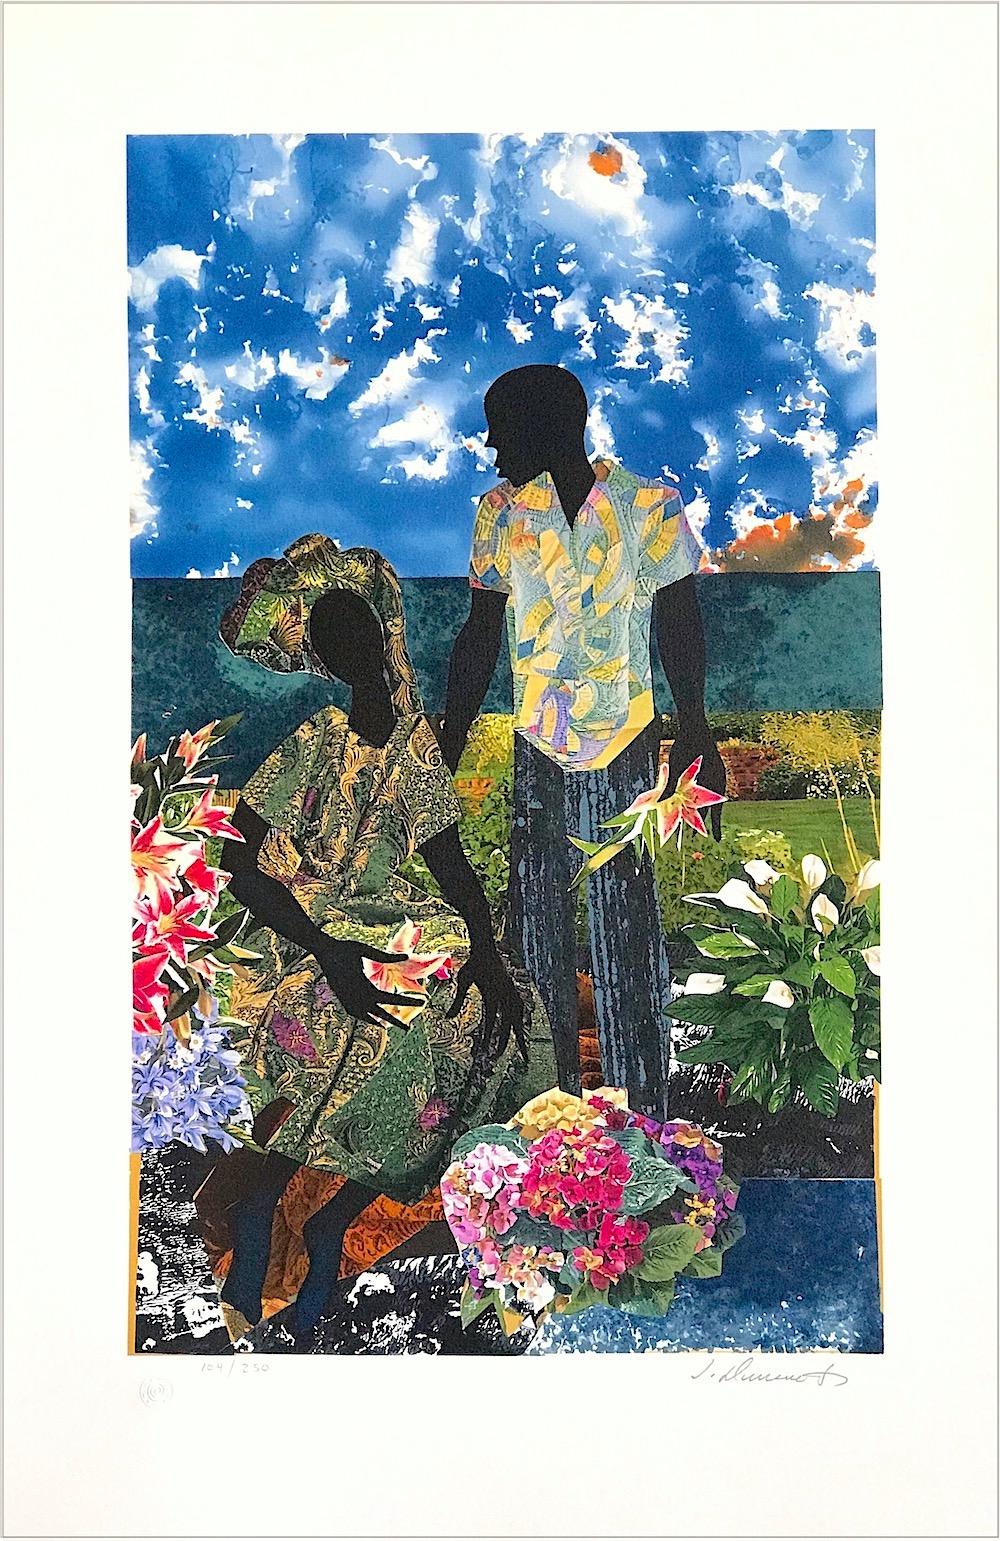 GARDEN ROMANCE Lithographie signée, portrait de deux hommes noirs, amoureux, jardin de fleurs